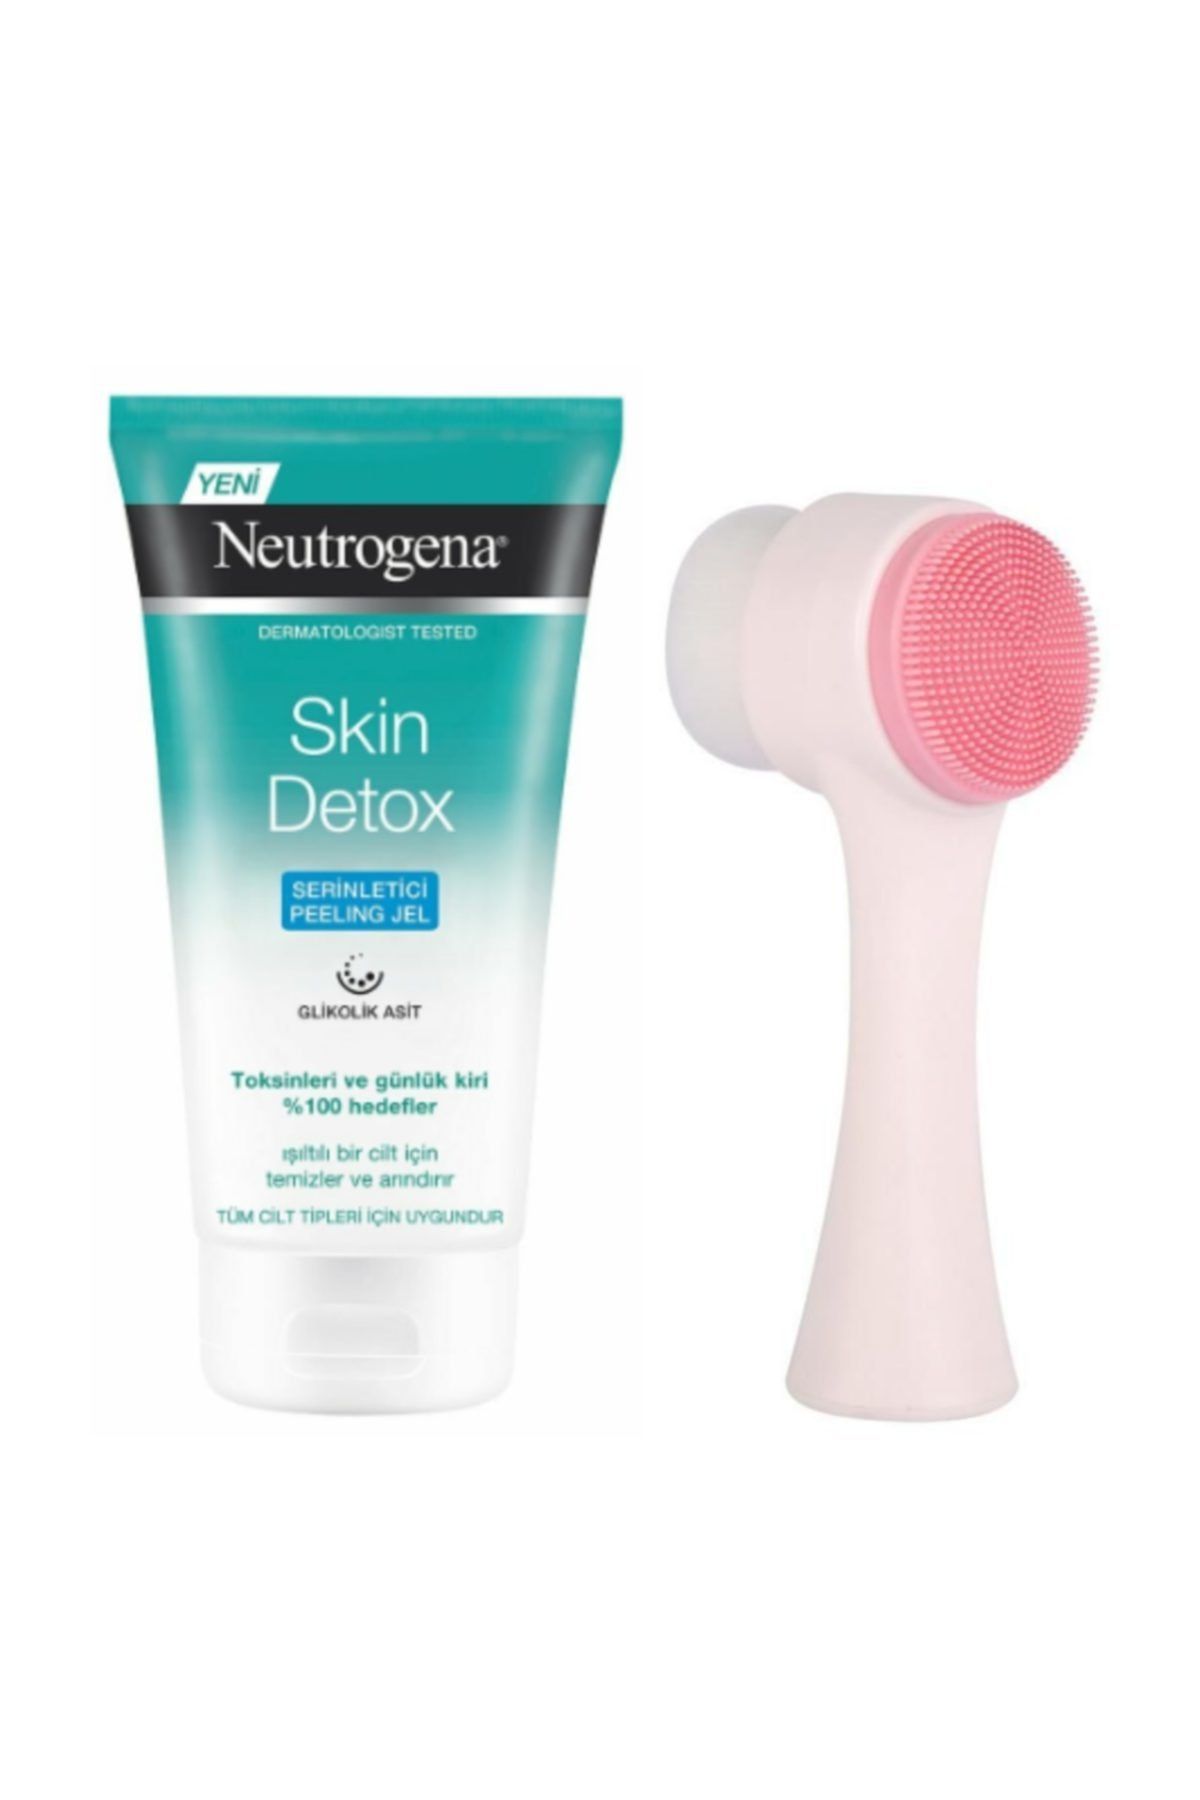 Neutrogena Skin Detox Peeling Jel 150 Ml Ve Cilt Temizleme Fırçası